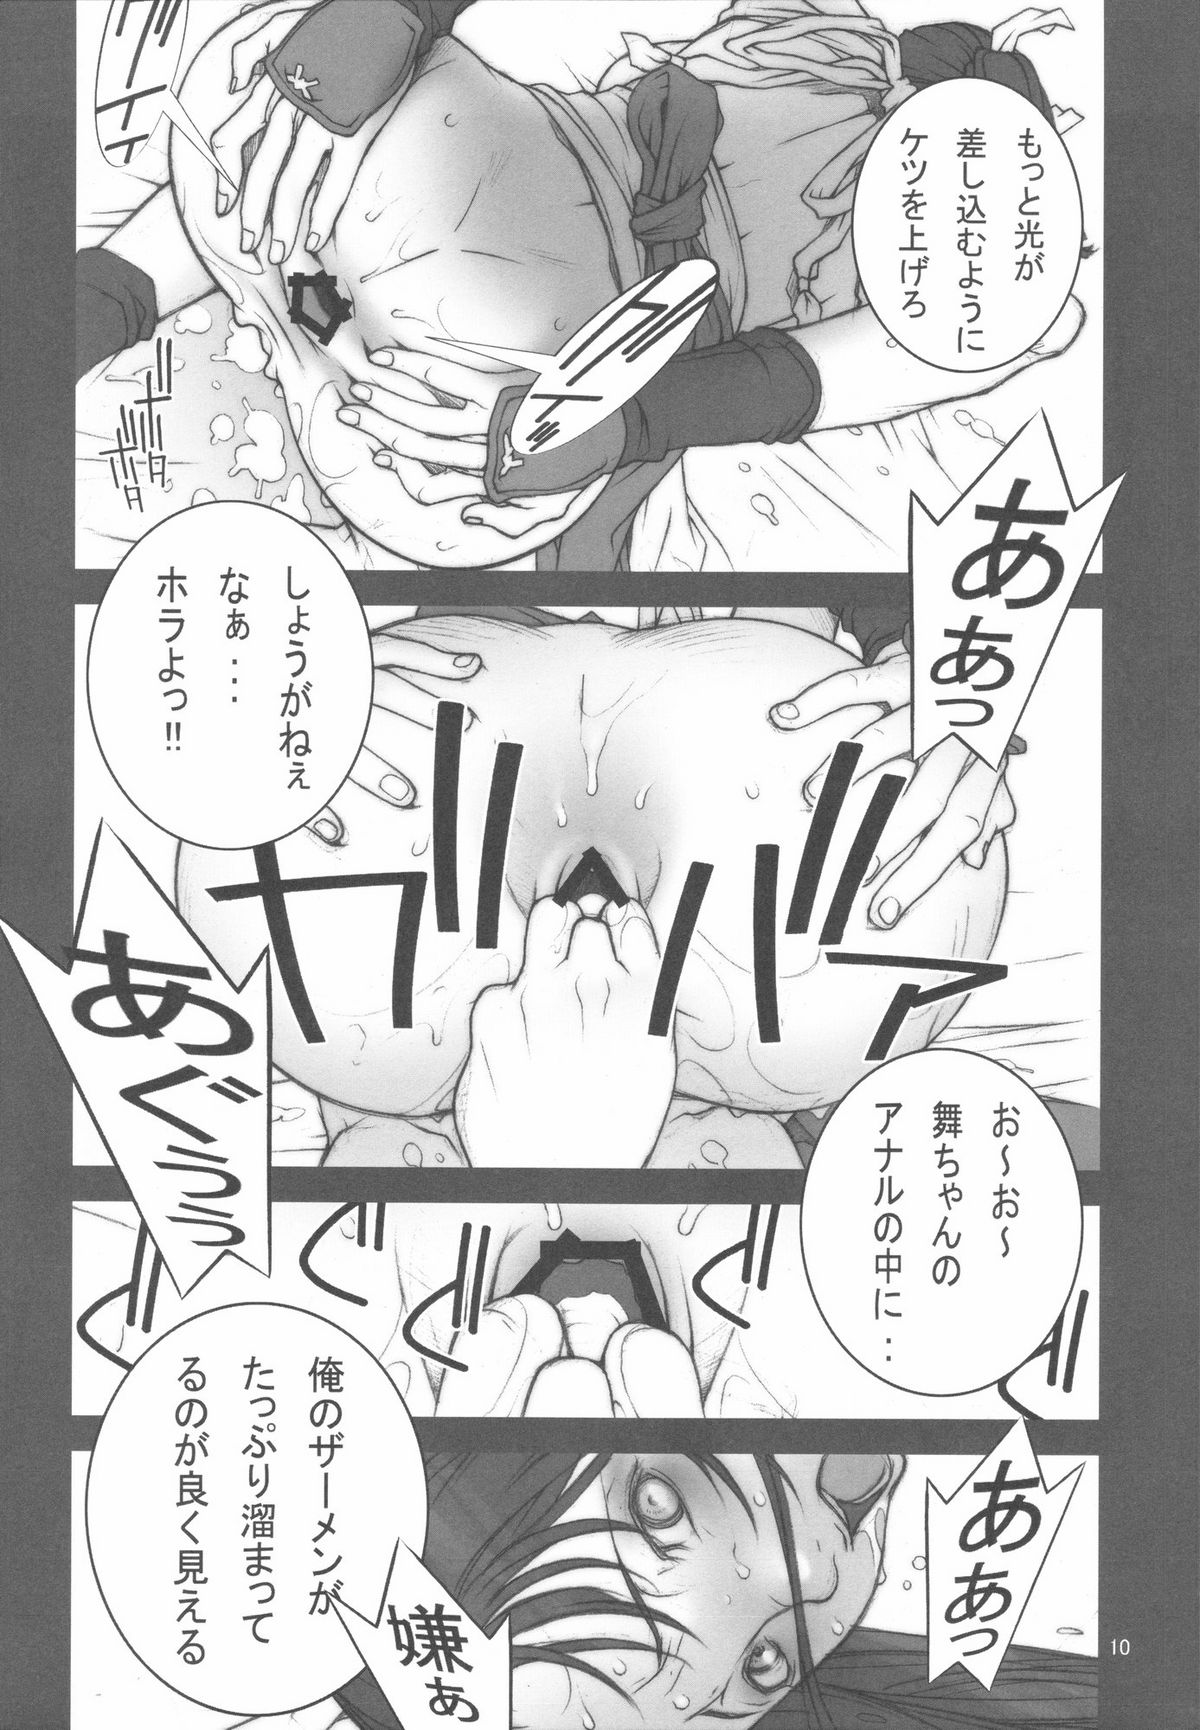 [p] Kakutou Game cap1-3 + extra page 11 full